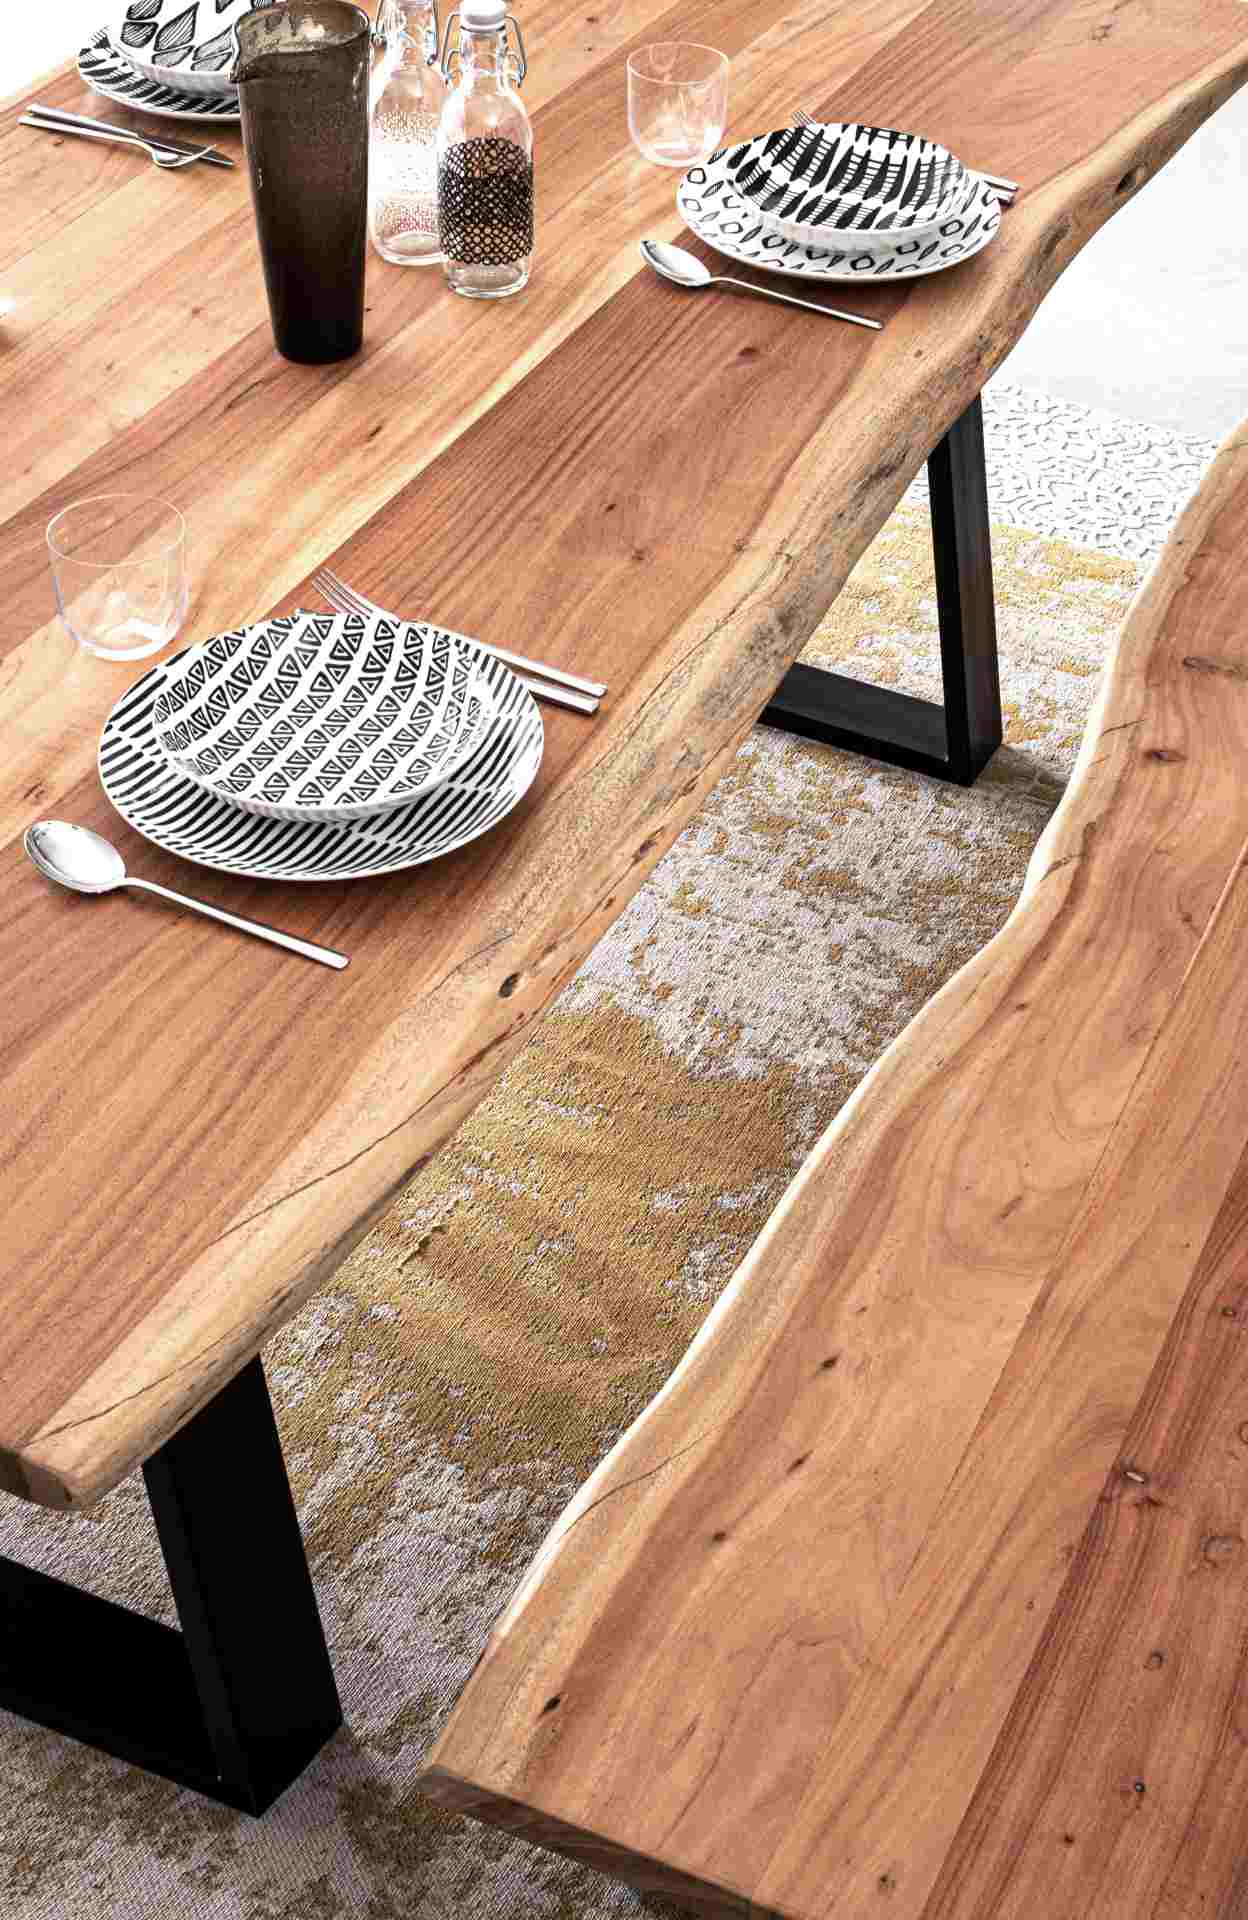 Der Esstisch Artur überzeugt mit seinem moderndem Design. Gefertigt wurde er aus Akazienholz, welches einen natürlichen Farbton besitzt. Das Gestell des Tisches ist aus Metall und ist in eine schwarze Farbe. Der Tisch besitzt eine Breite von 200 cm.